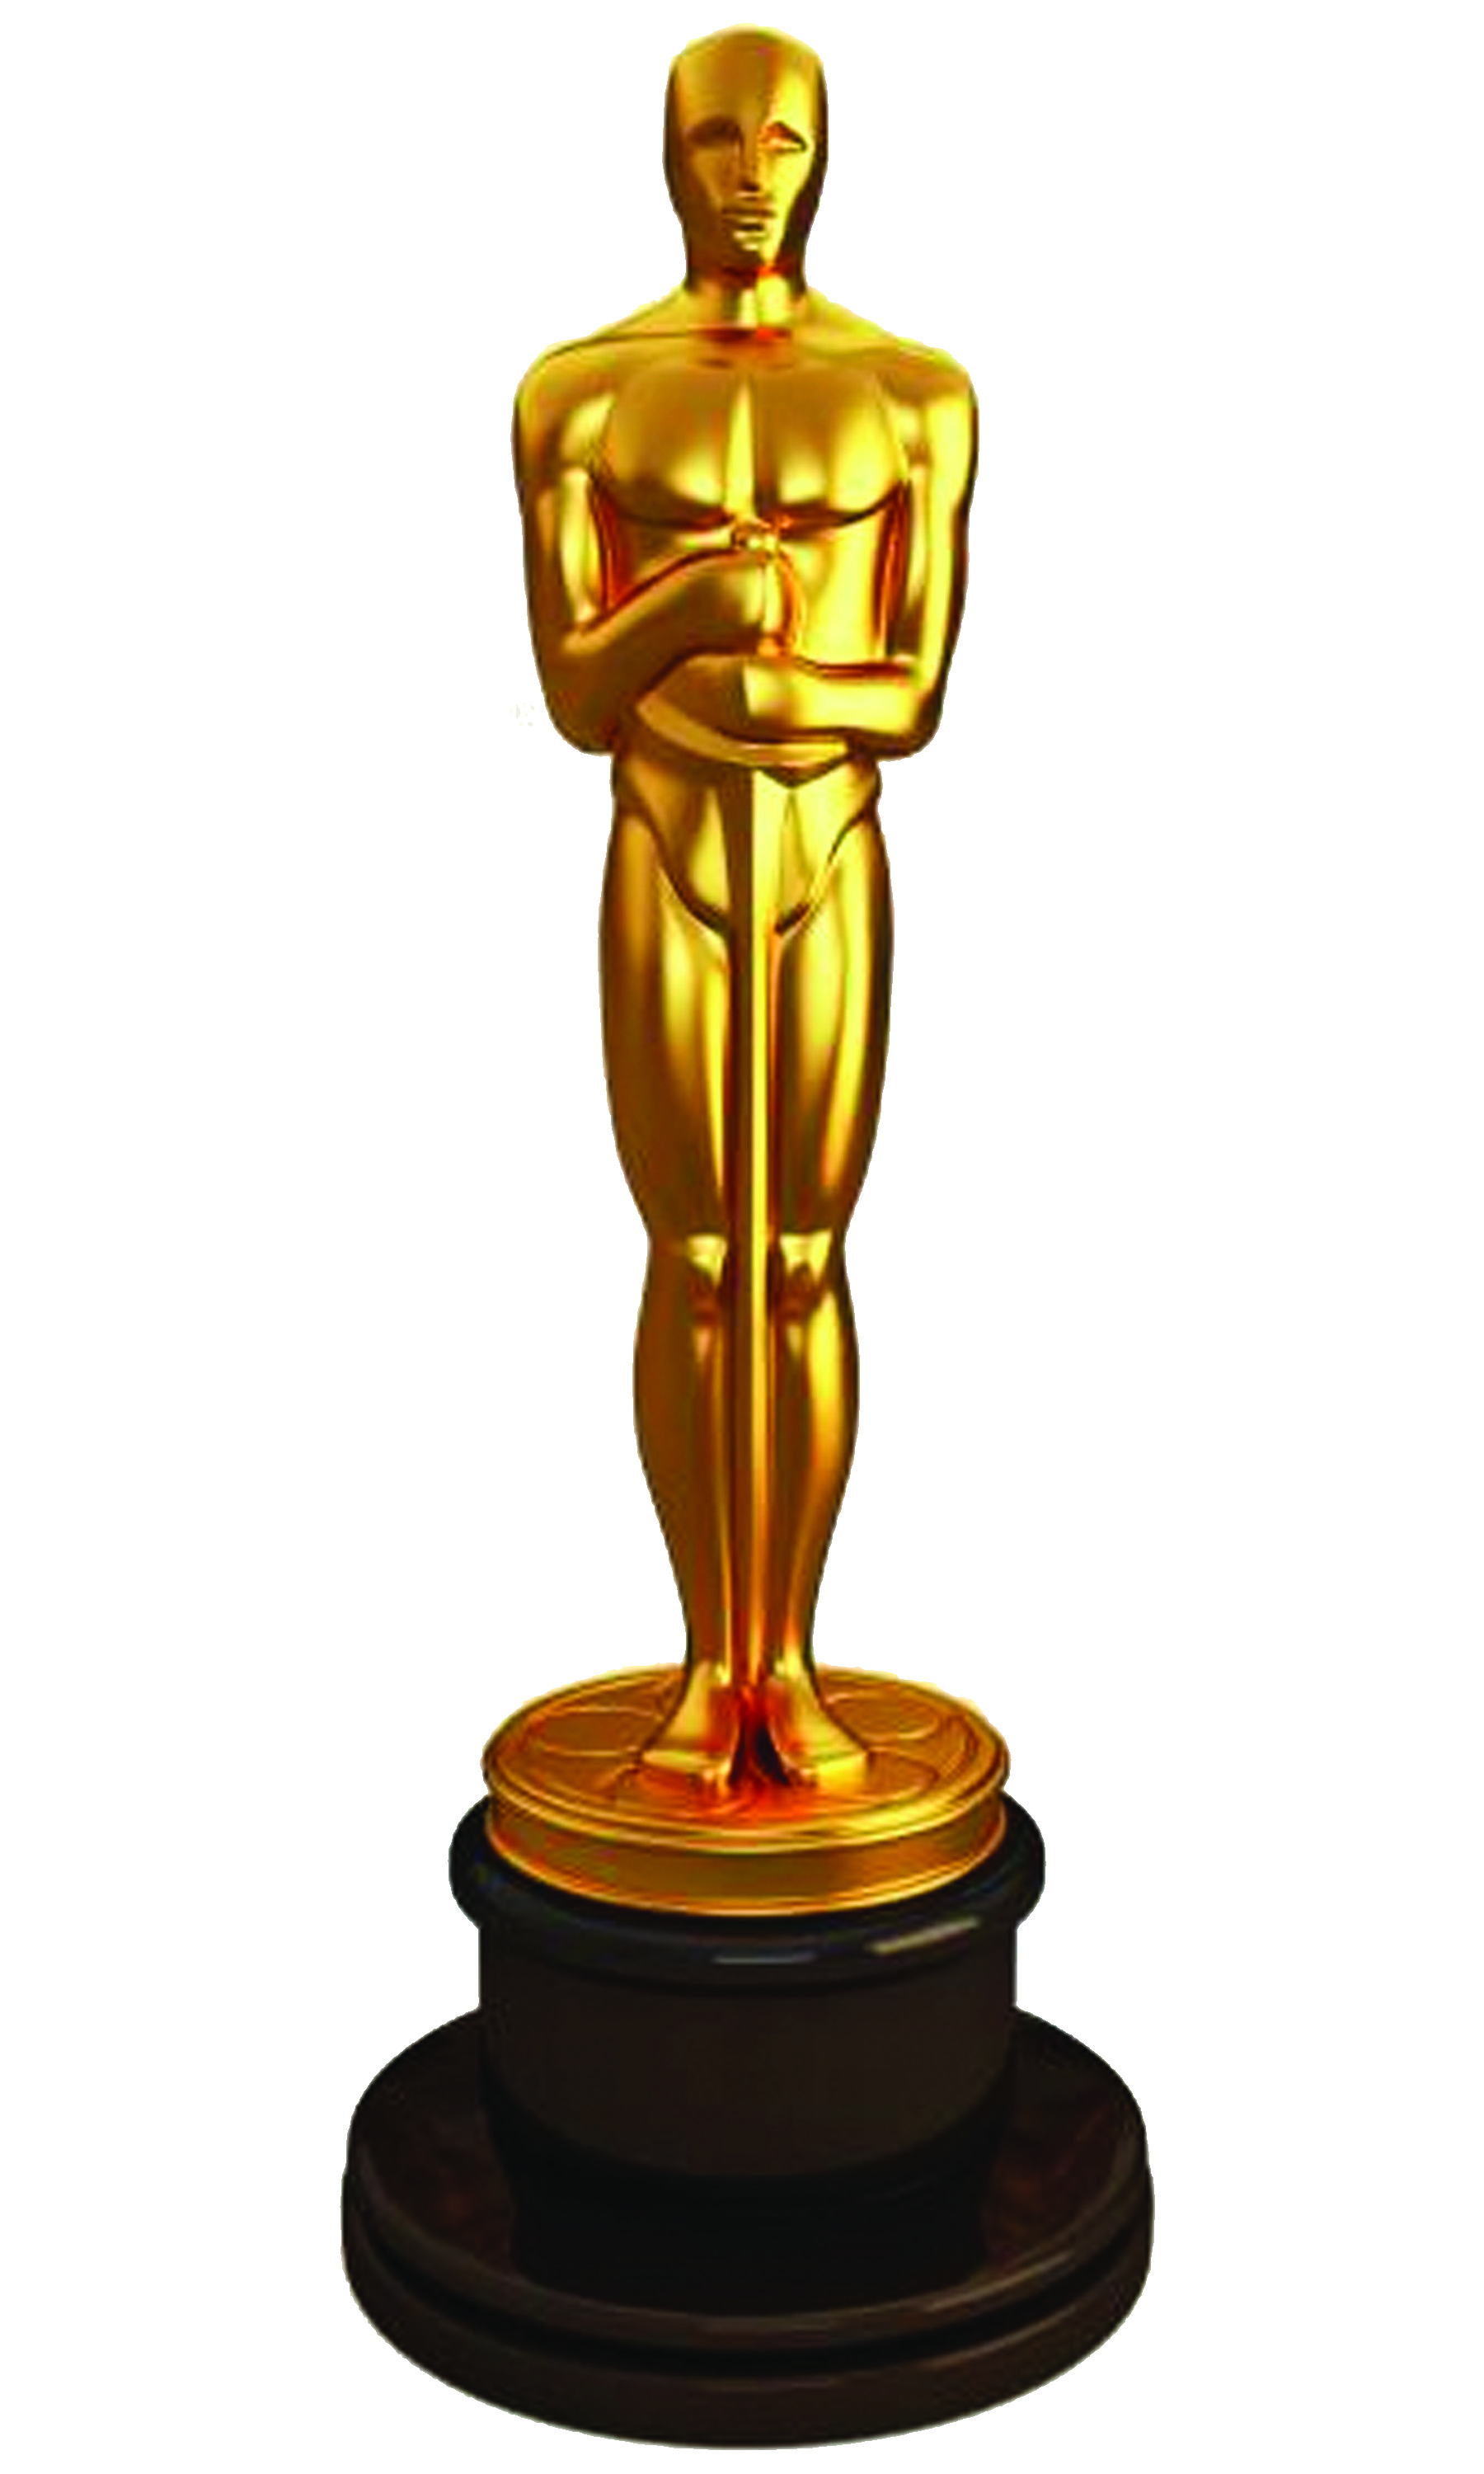 Oscar Statue Clip Art   Clipart Best